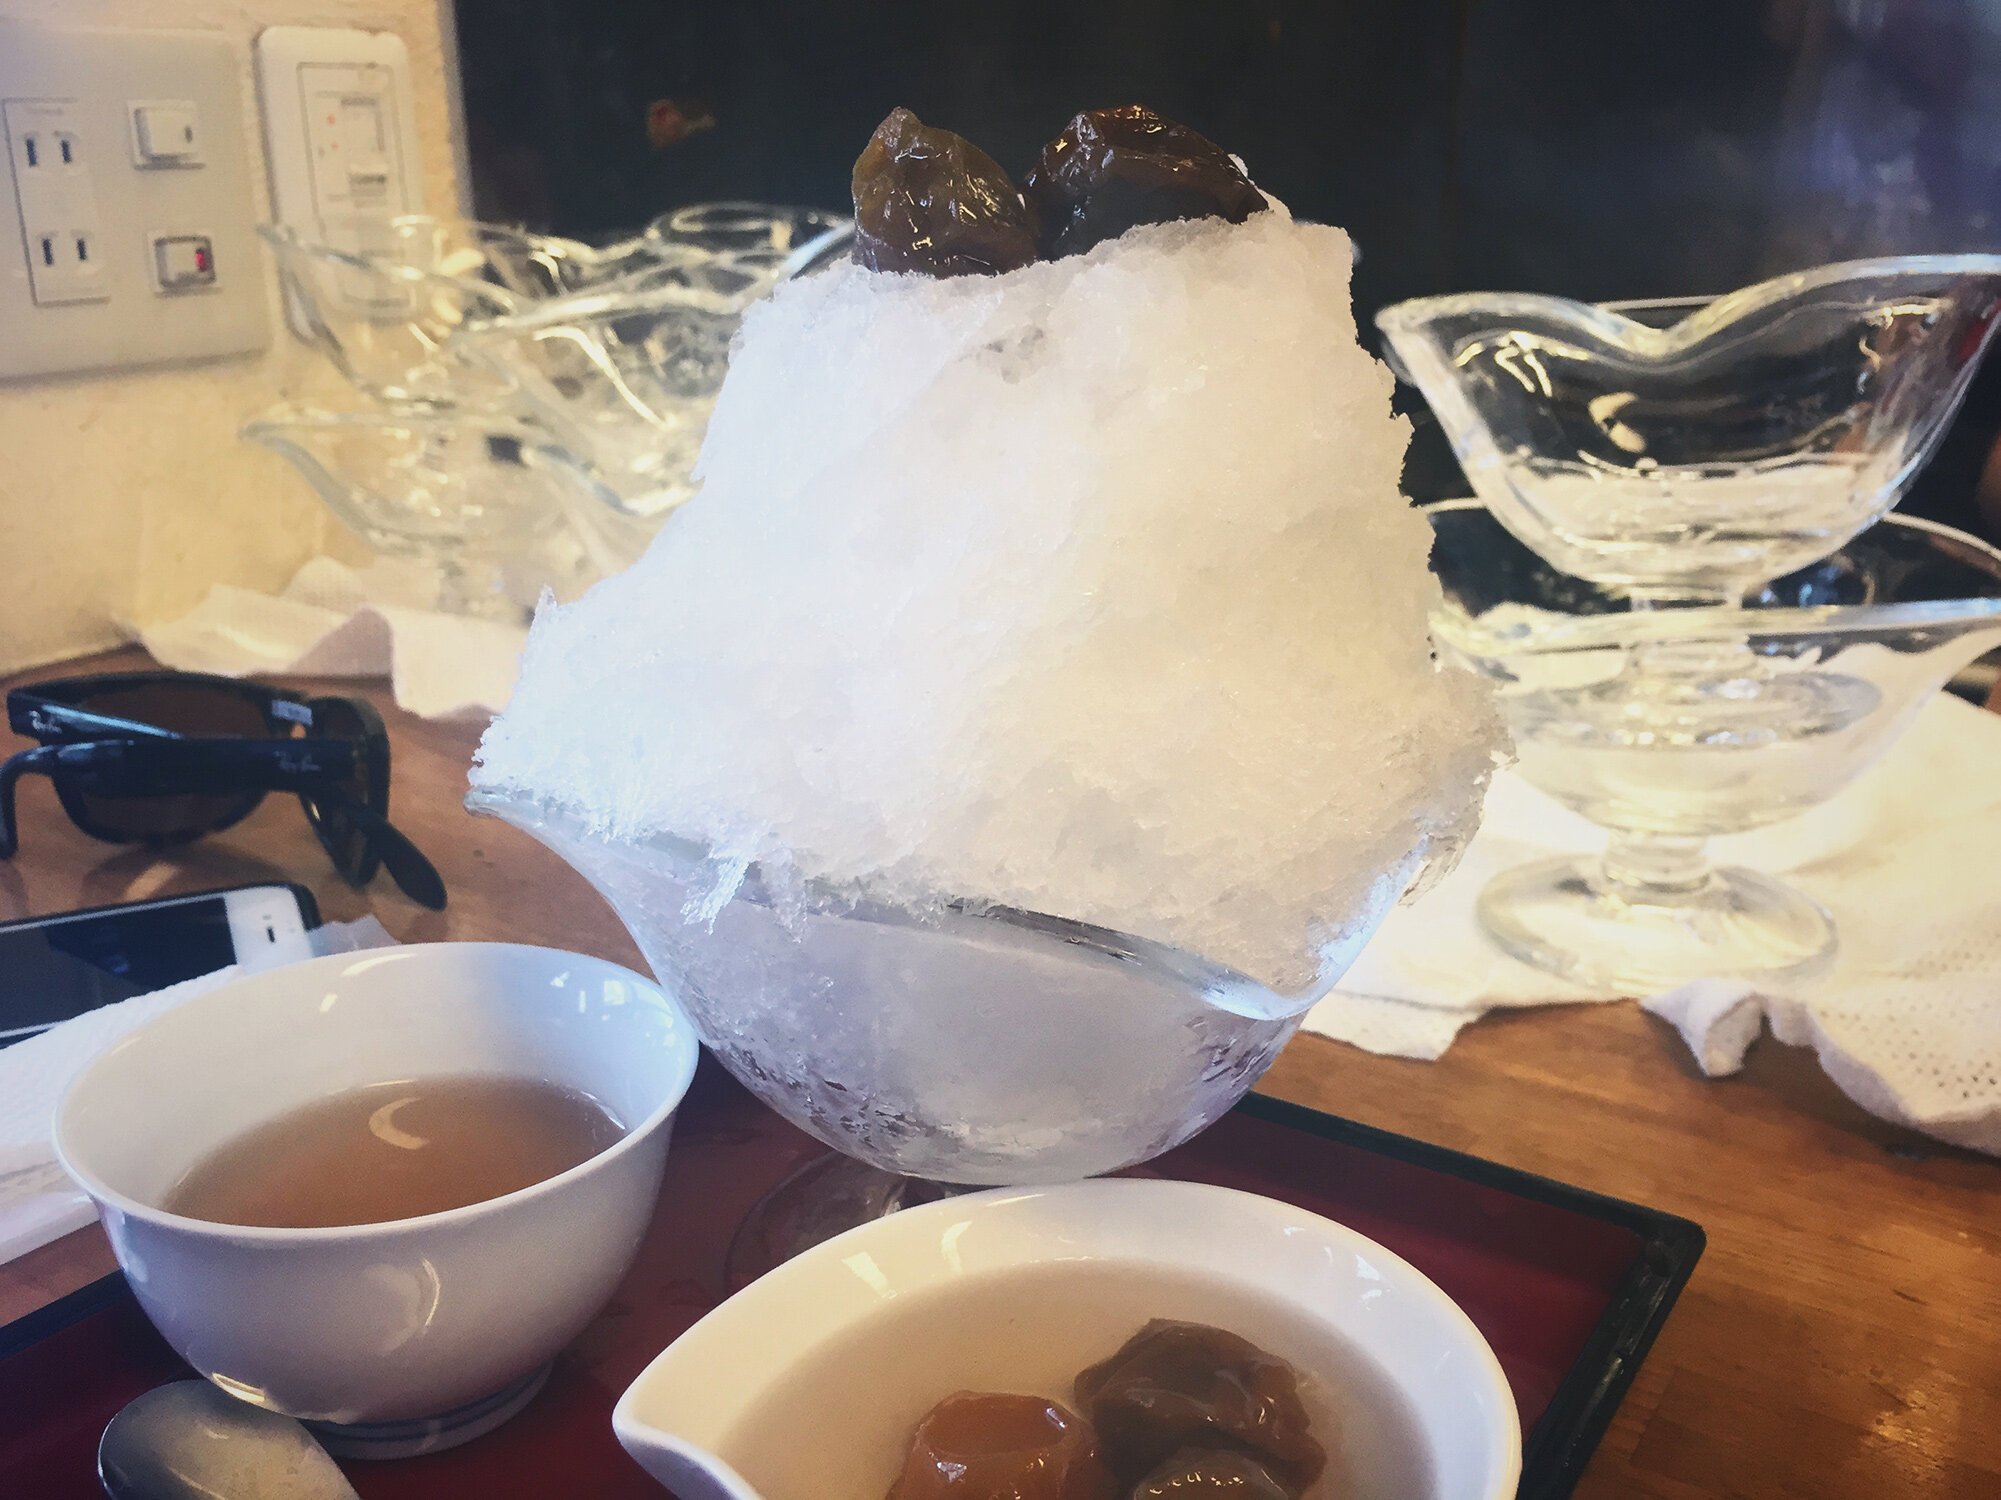 Ume (Japanese plum) shaved ice